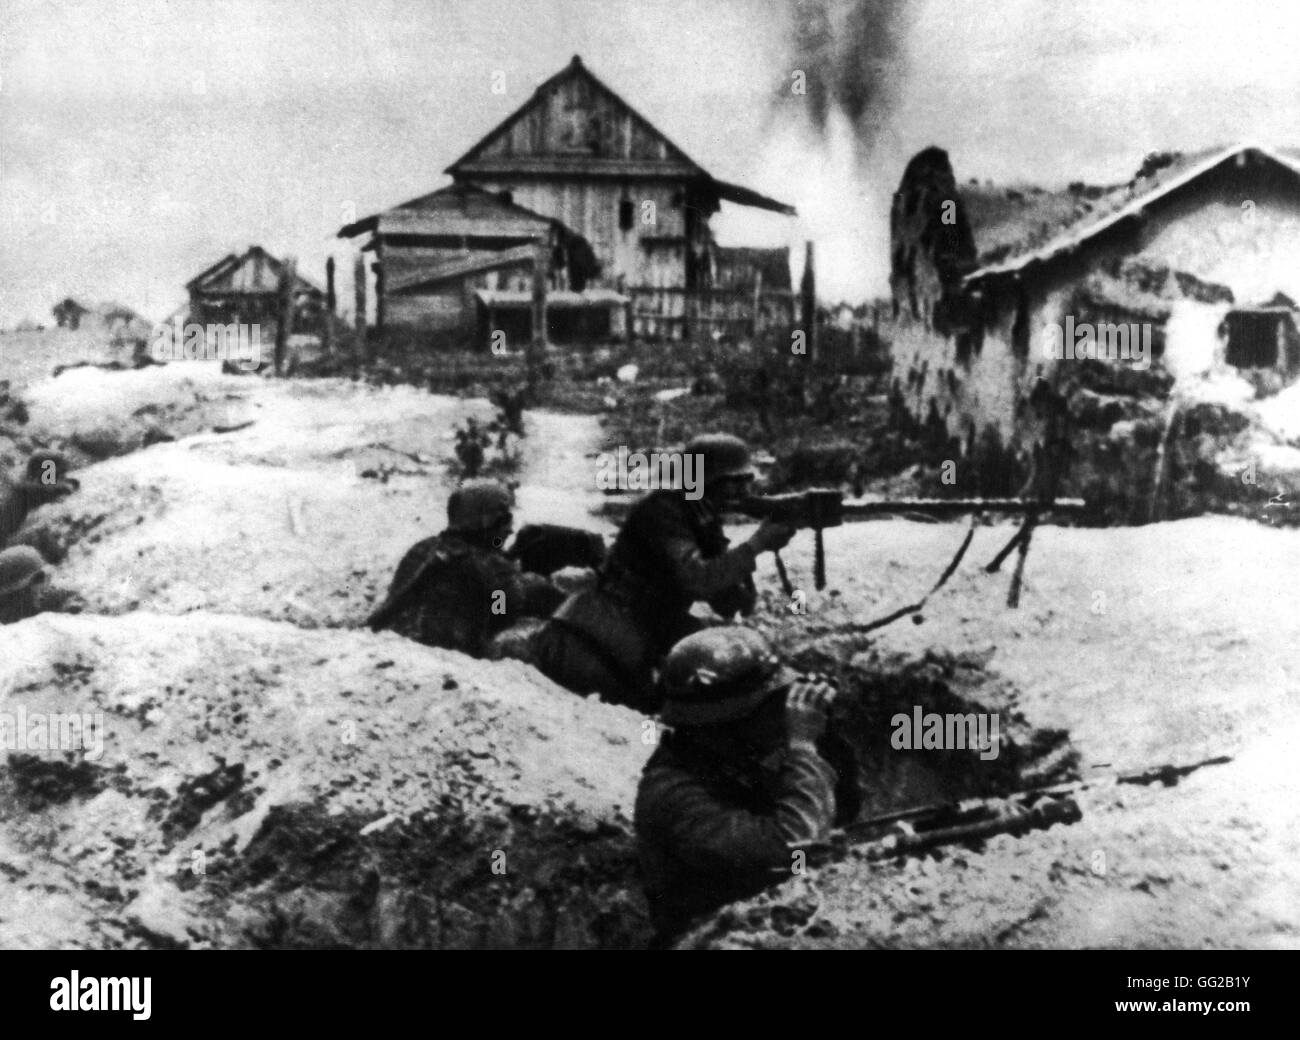 Deutsche Soldaten in Schützengräben haben sie in den Vororten von Stalingrad 18. November 1942 UdSSR, zweiten Weltkrieg Krieg National Archives, Washington gegraben Stockfoto